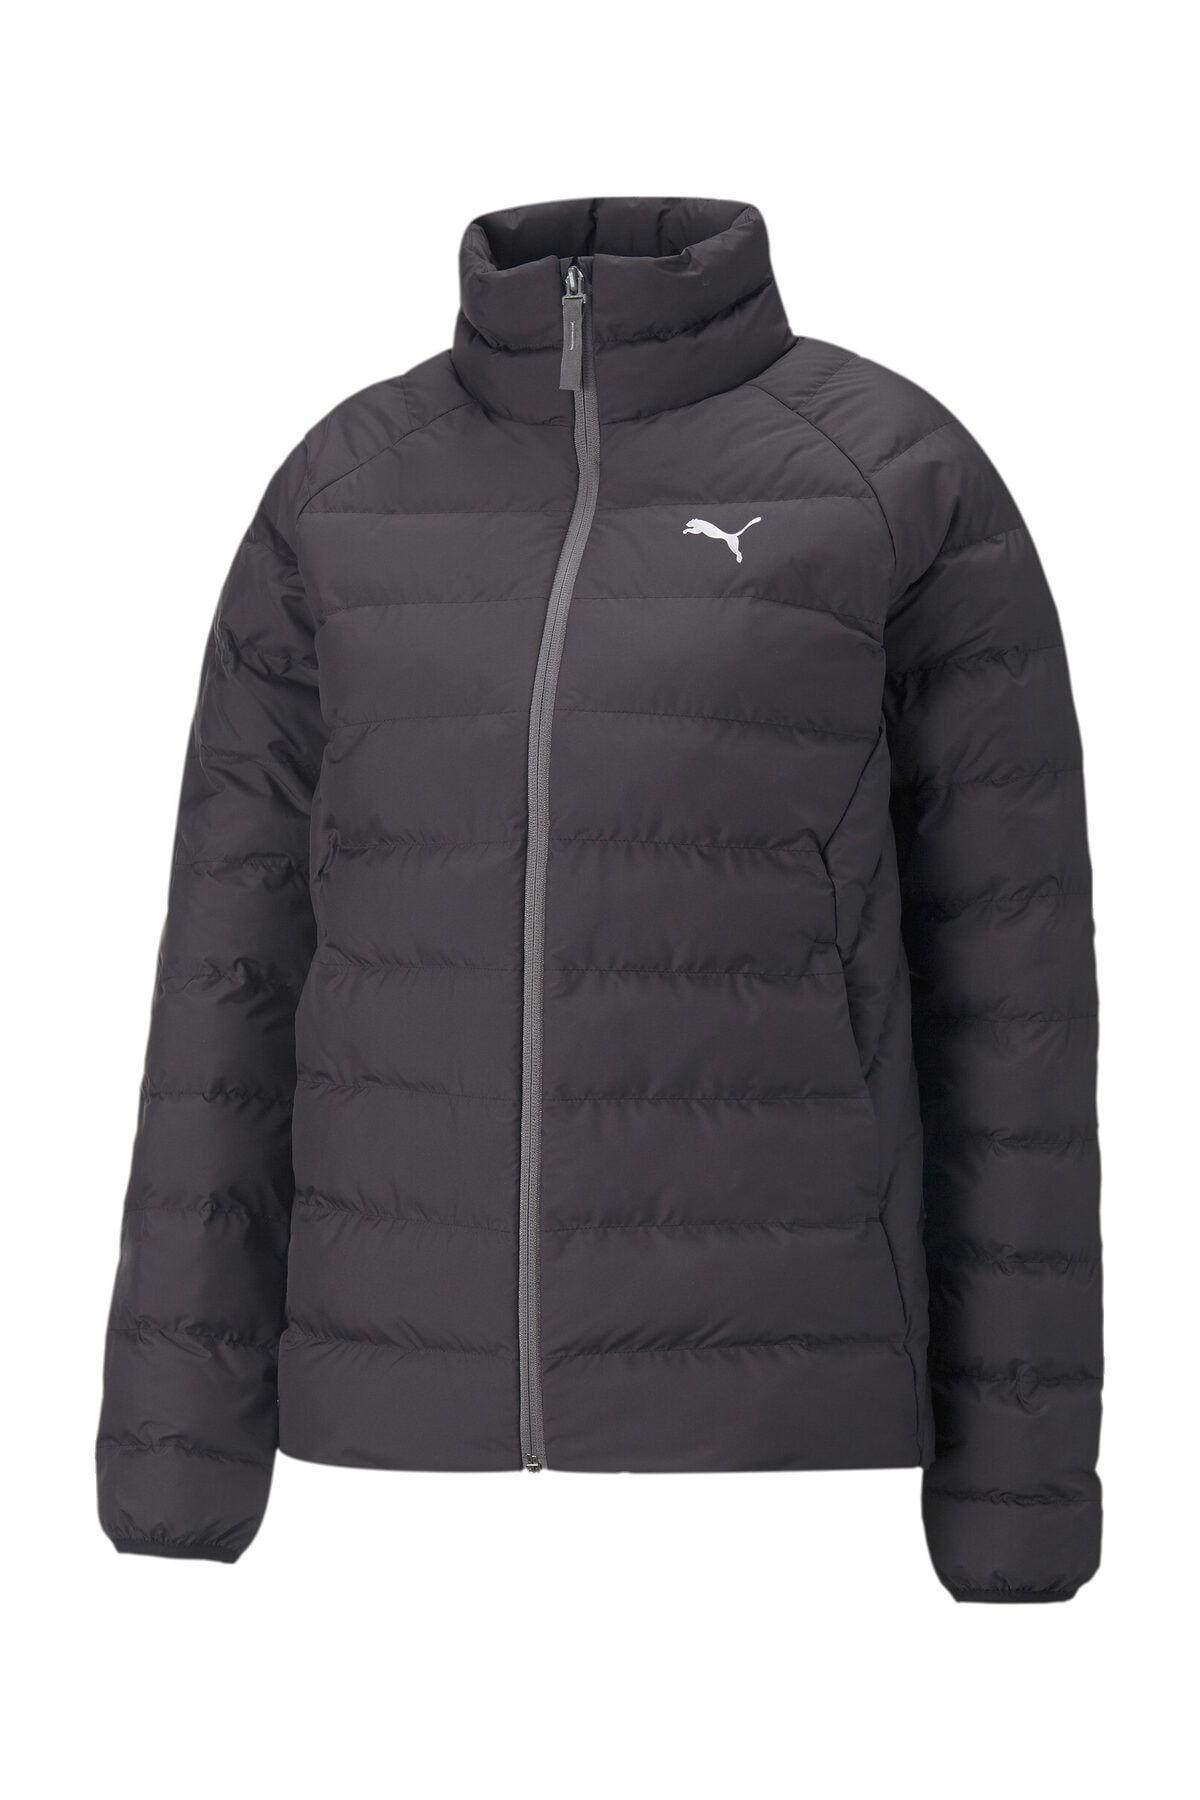 Puma Active Polyball - Coat-Jacket - Trendyol Black Jacket Sports